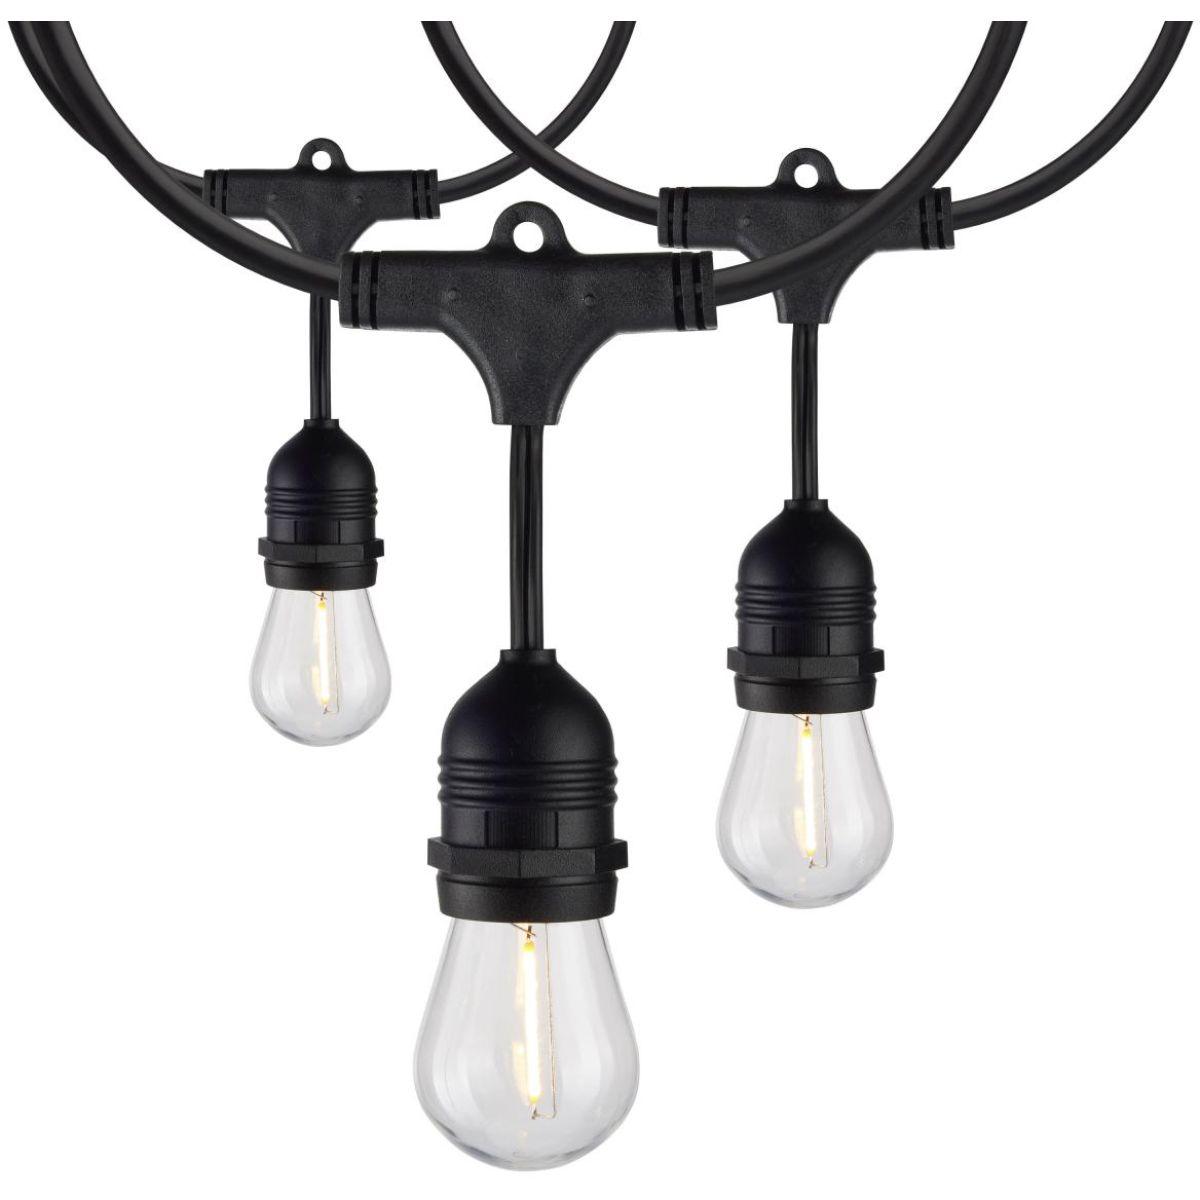 60 Feet Commercial LED String Light, 24 S14 bulbs, Warm white 2200K, Indoor/Outdoor, 120V - Bees Lighting